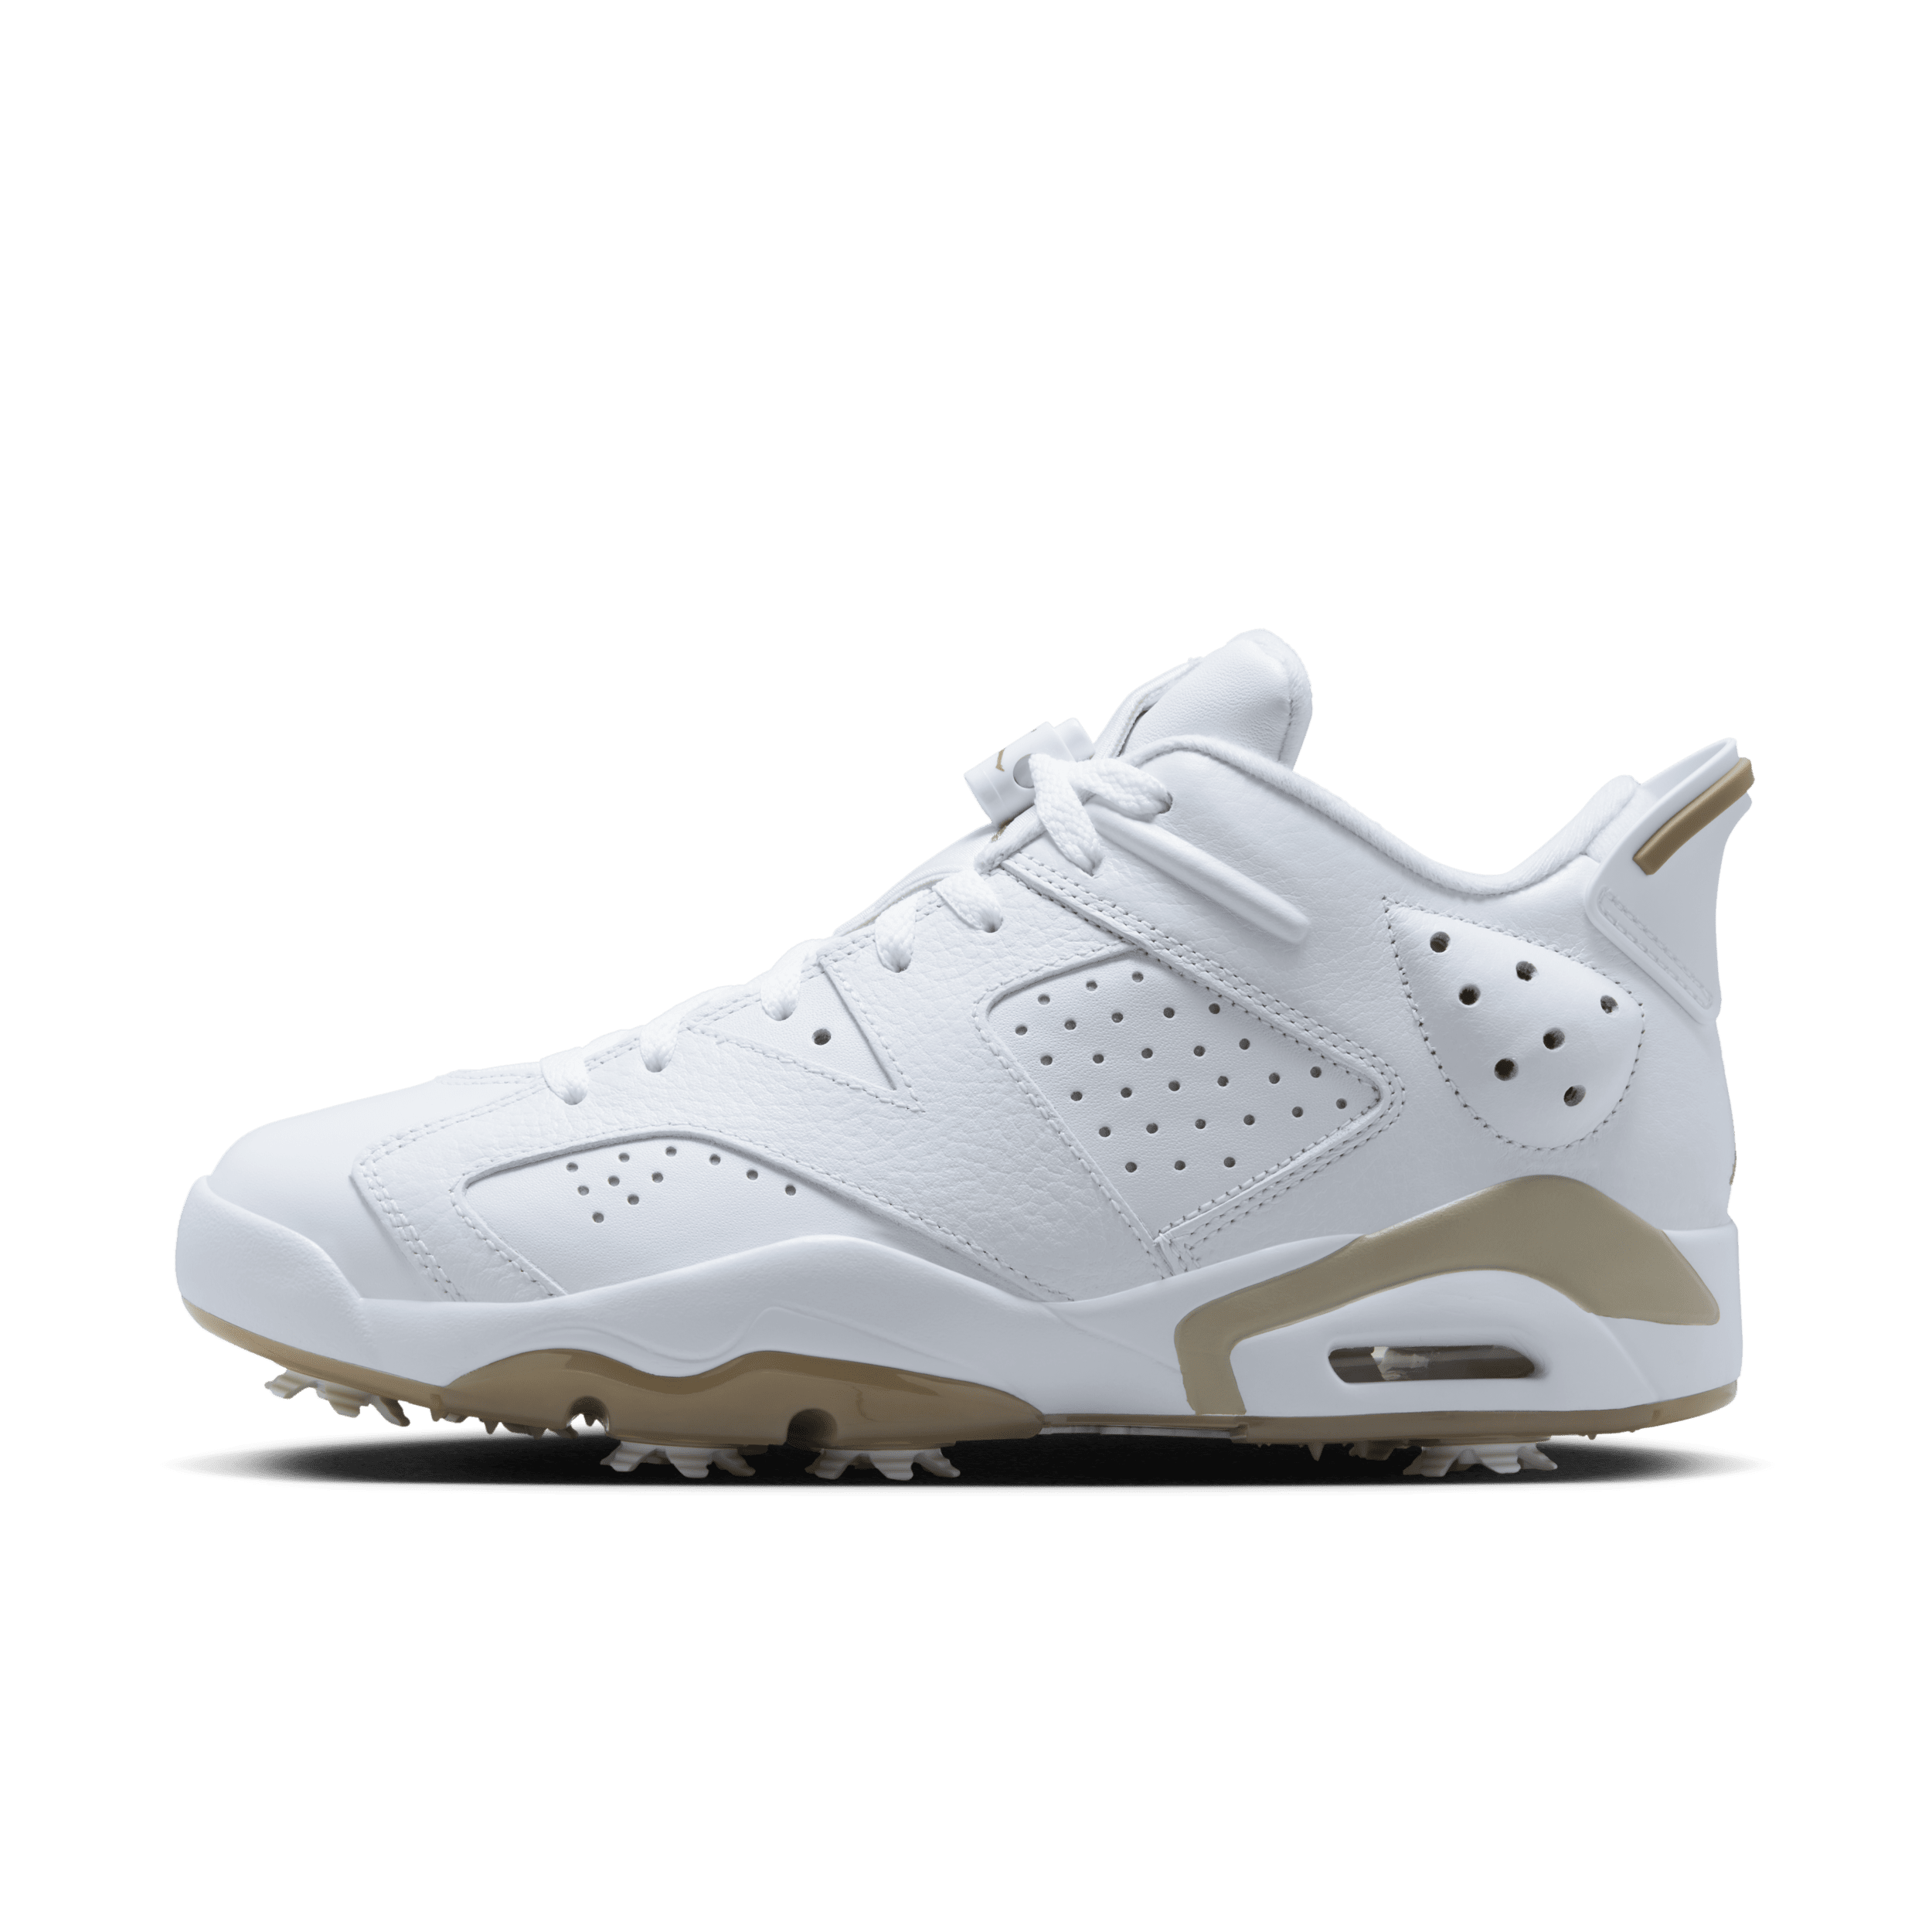 Jordan Retro 6 G Zapatillas de golf - Hombre - Blanco